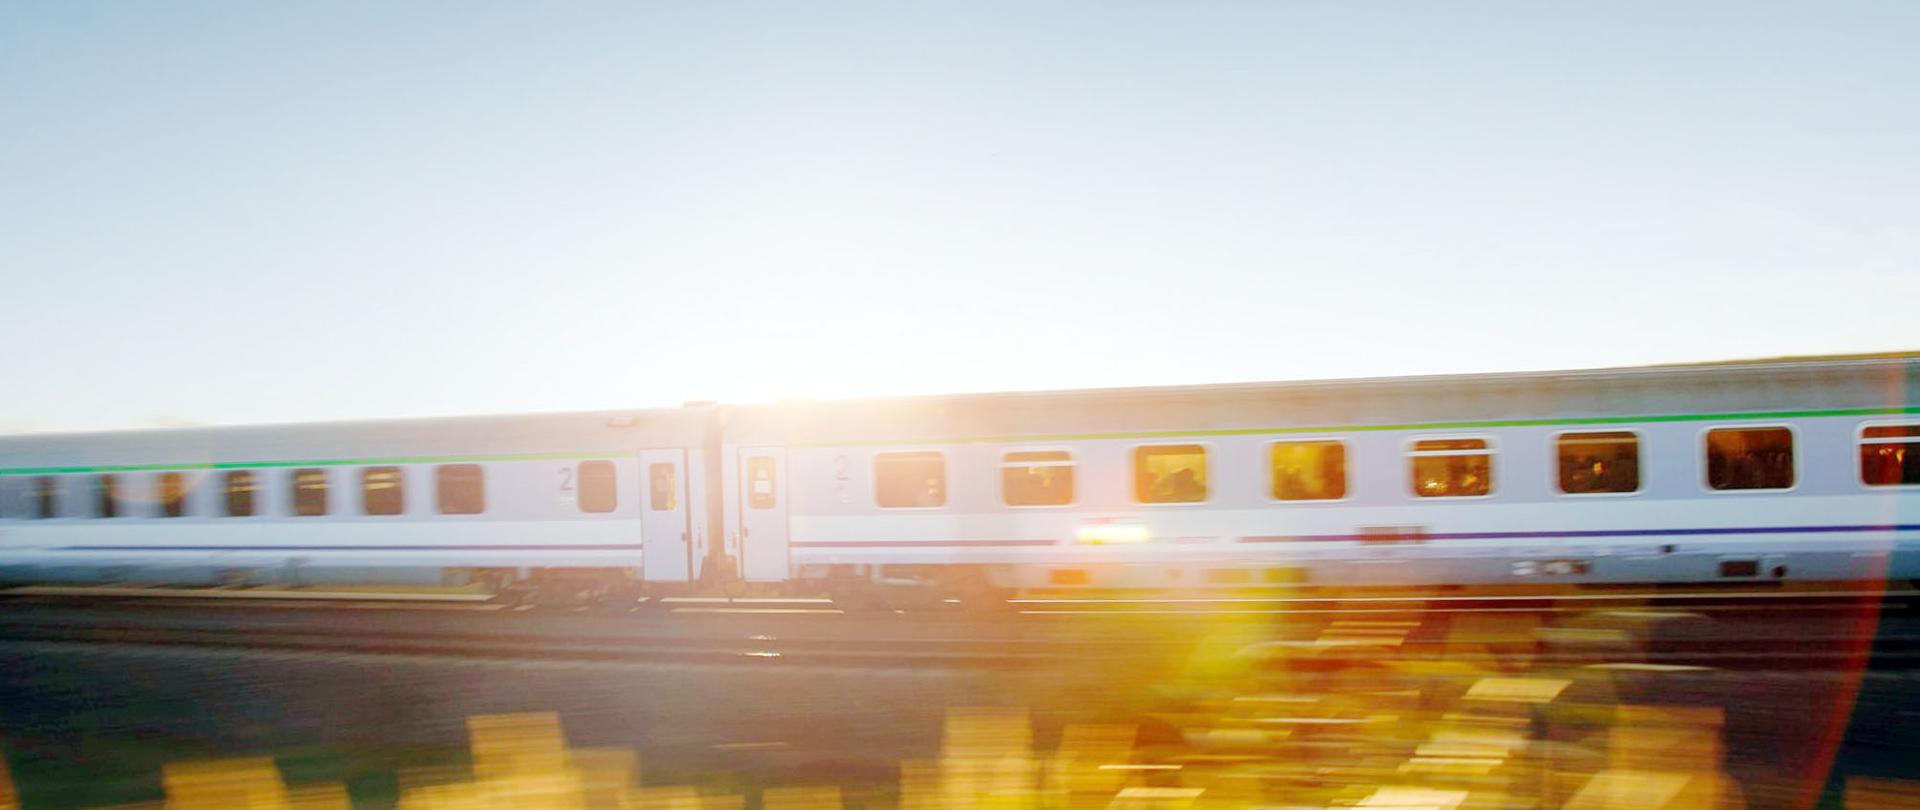 Na zdjęciu widać jadący pociąg PKP Intercity